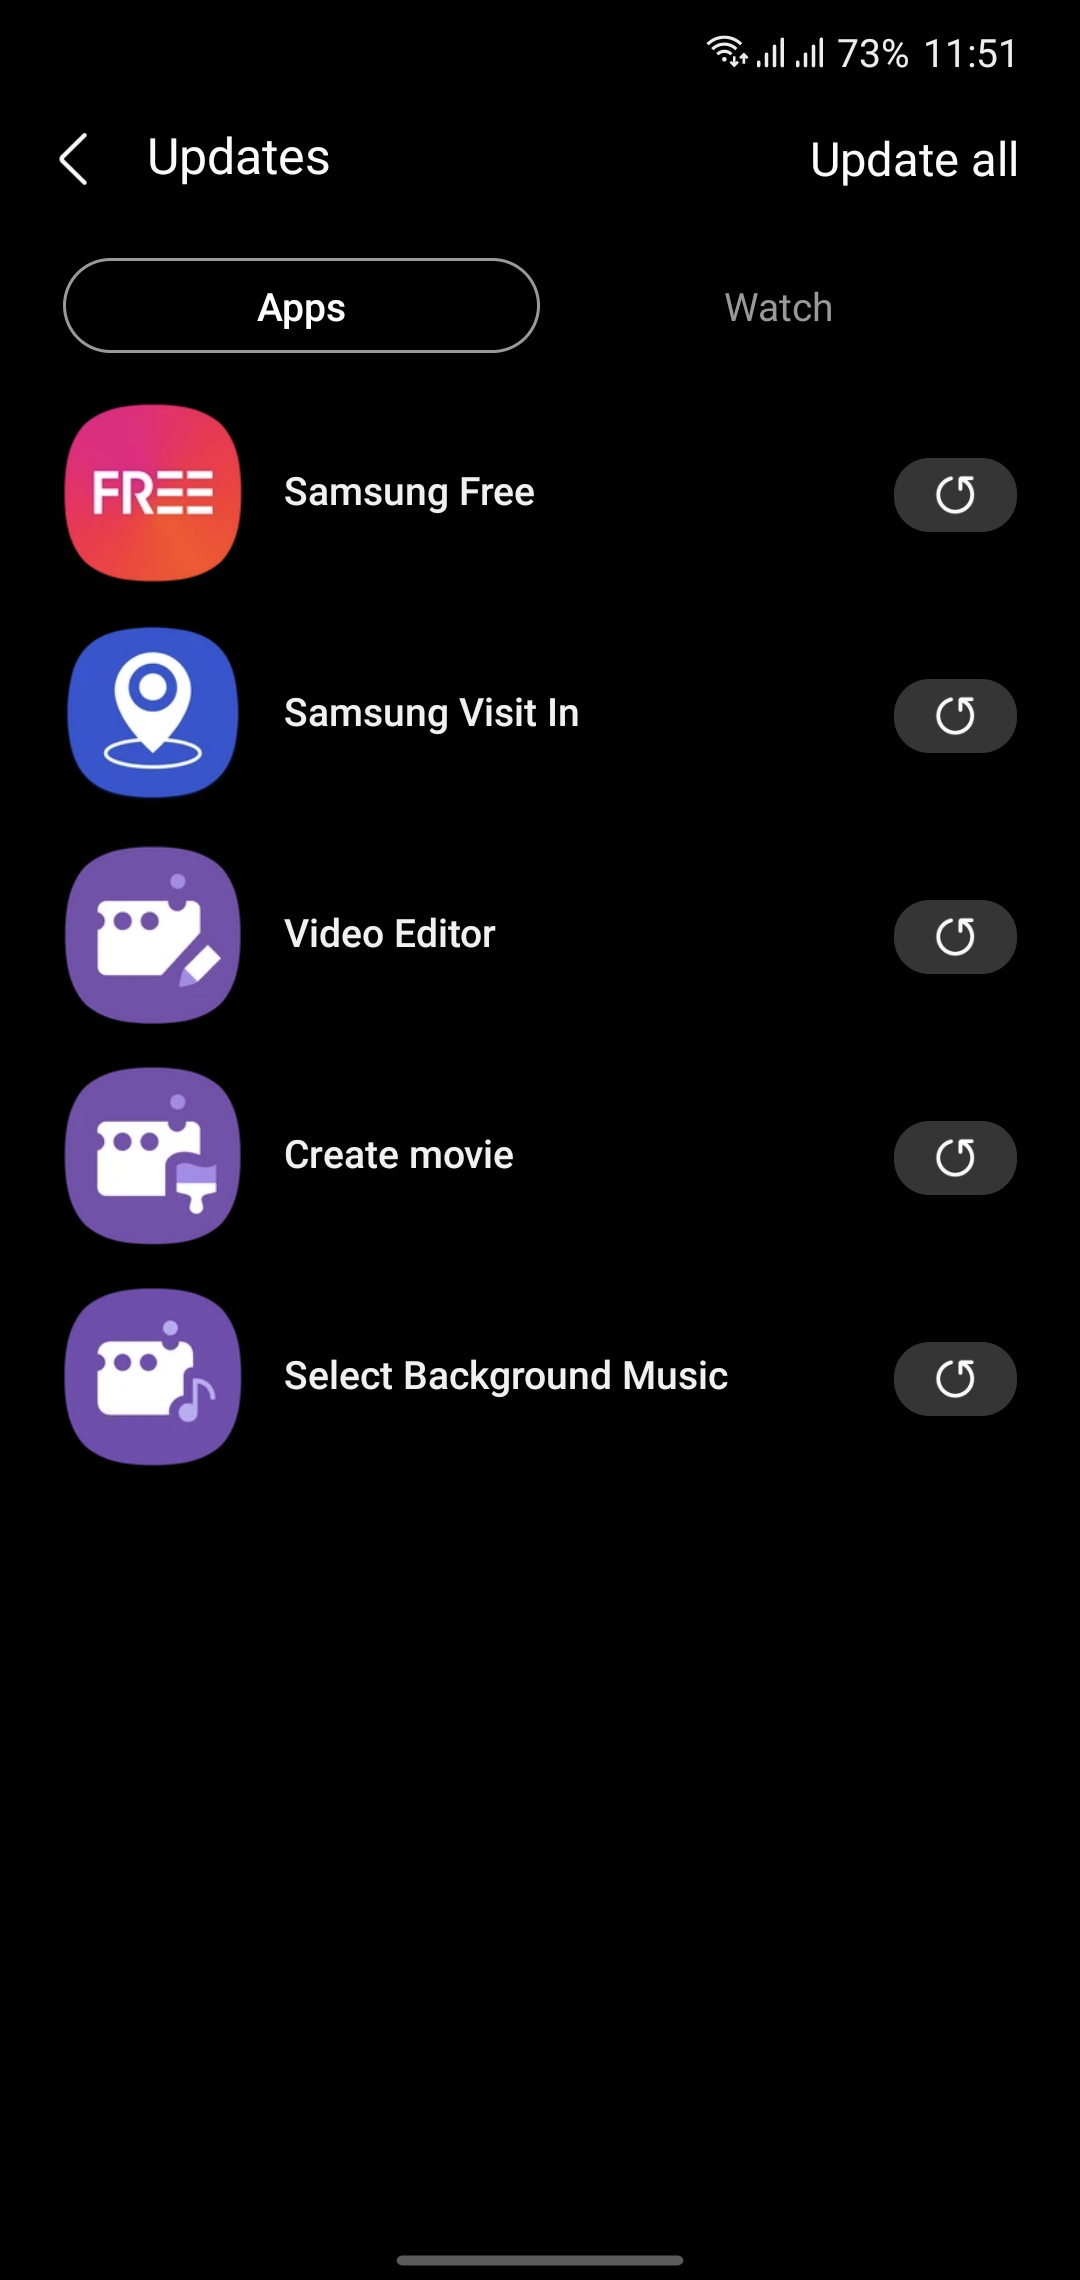 Nếu bạn đang muốn tìm kiếm một ứng dụng chỉnh sửa video tốt nhất, hãy xem những hình ảnh liên quan đến Samsung Video Editor. Với ứng dụng này, bạn có thể dễ dàng chỉnh sửa, tạo và chia sẻ những video đẹp mắt một cách đơn giản và nhanh chóng.